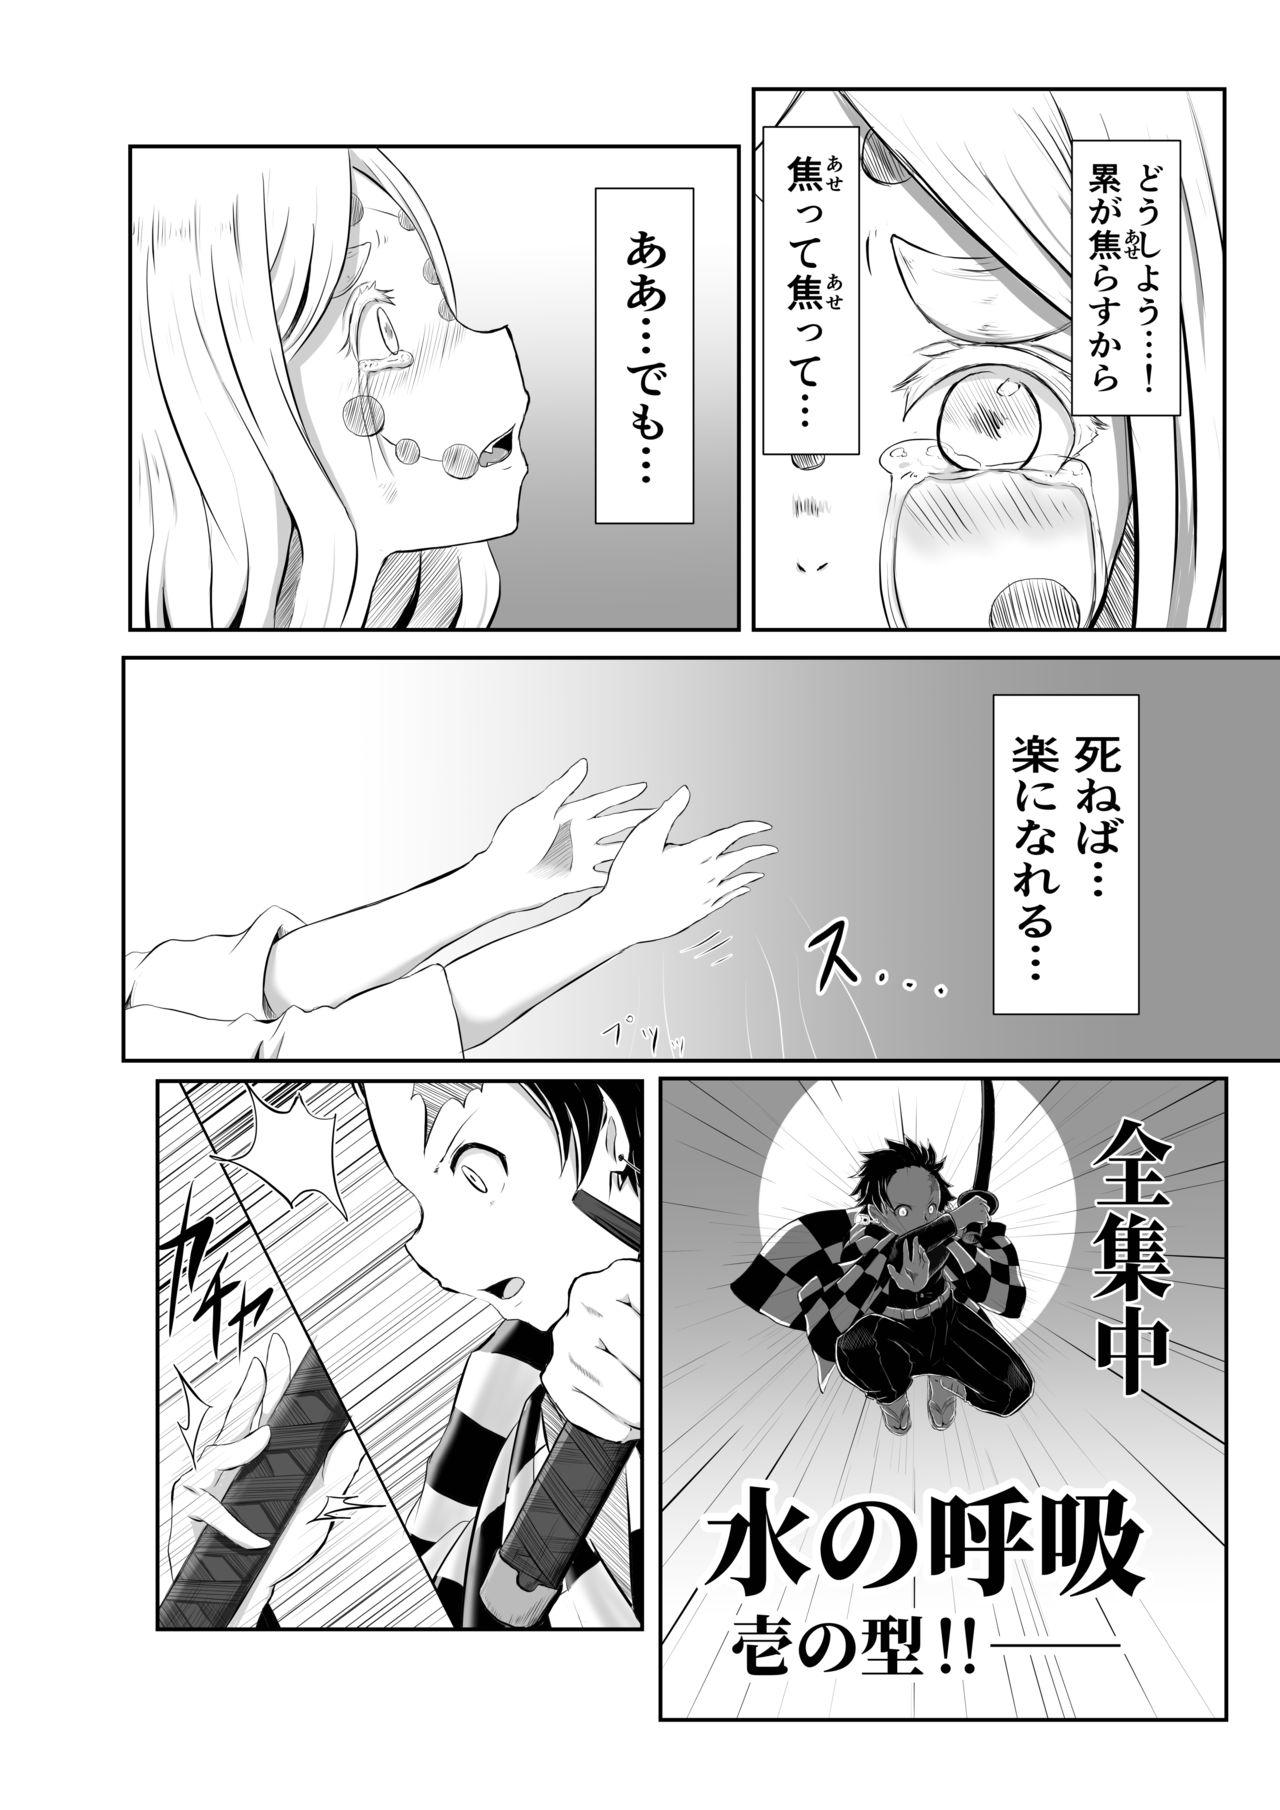 Wild Hinokami Sex. - Kimetsu no yaiba | demon slayer Kitchen - Page 2